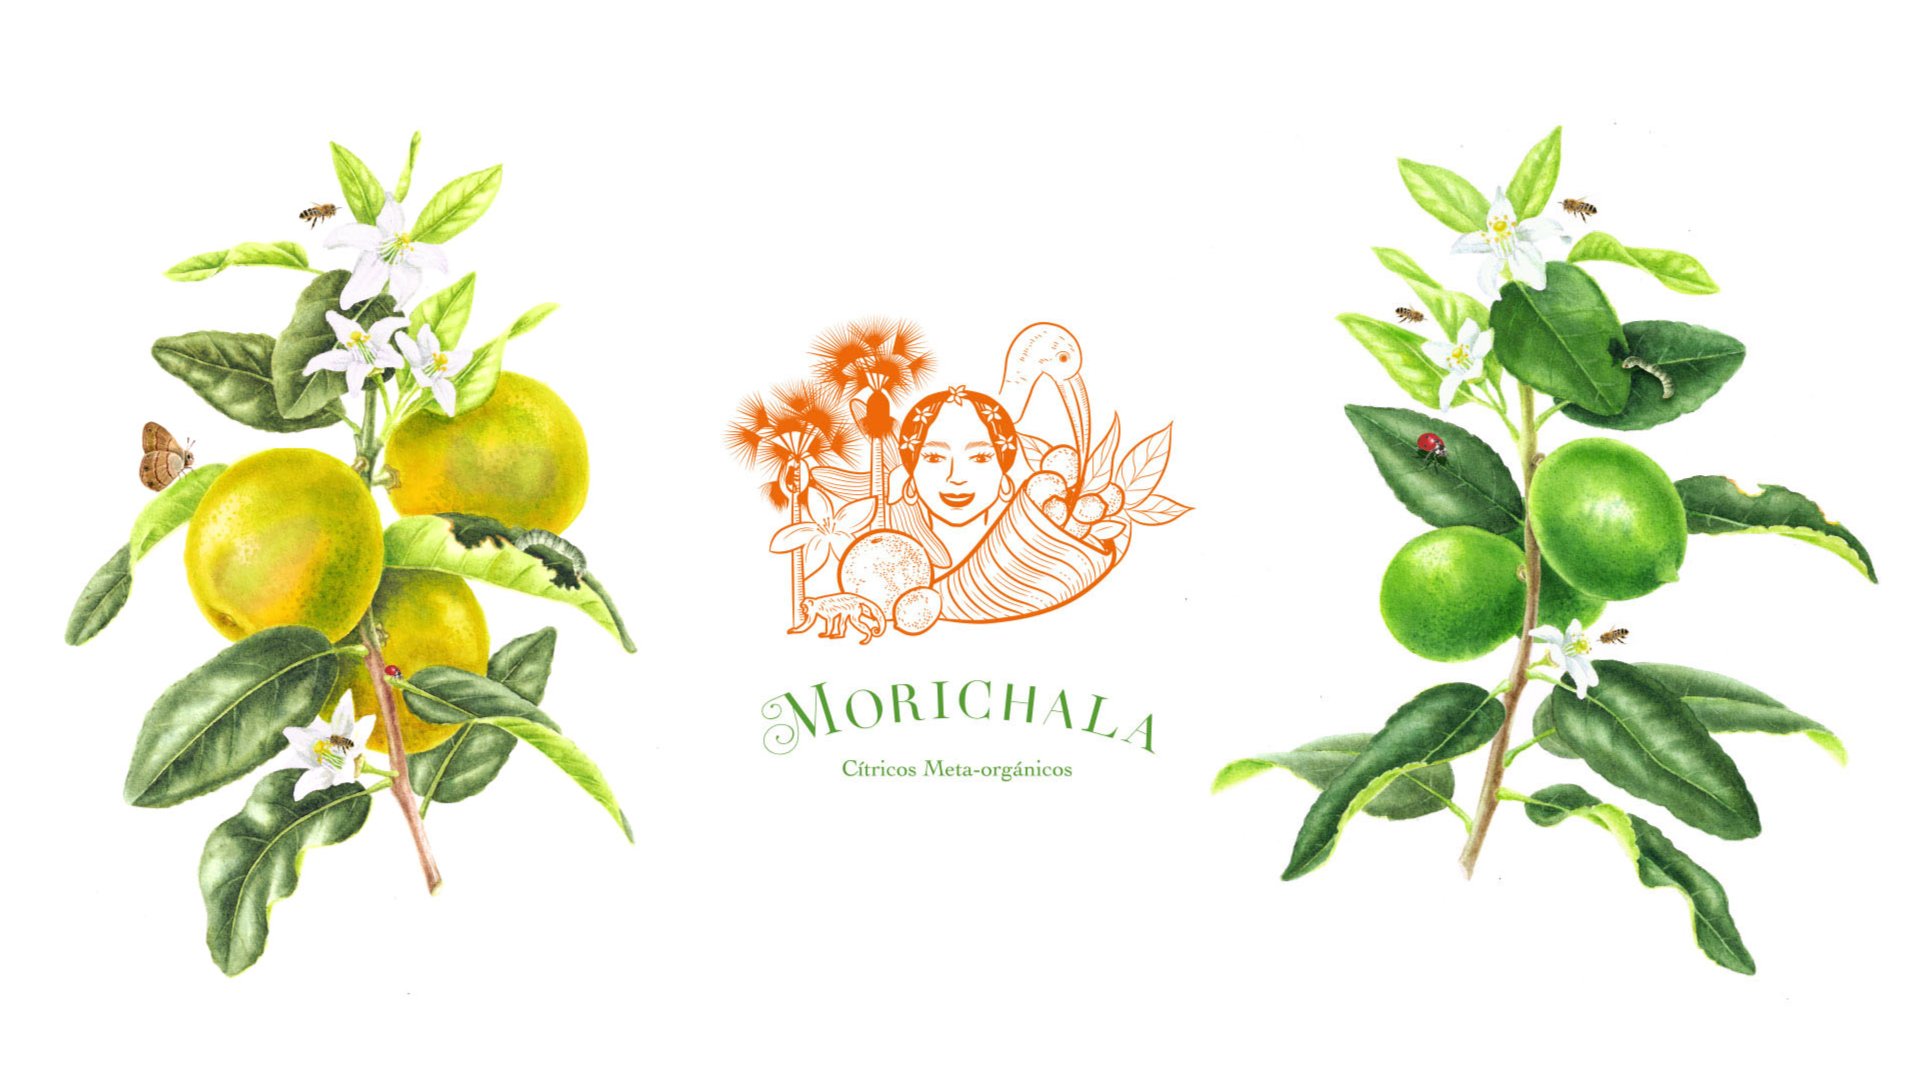 Branding Morichala